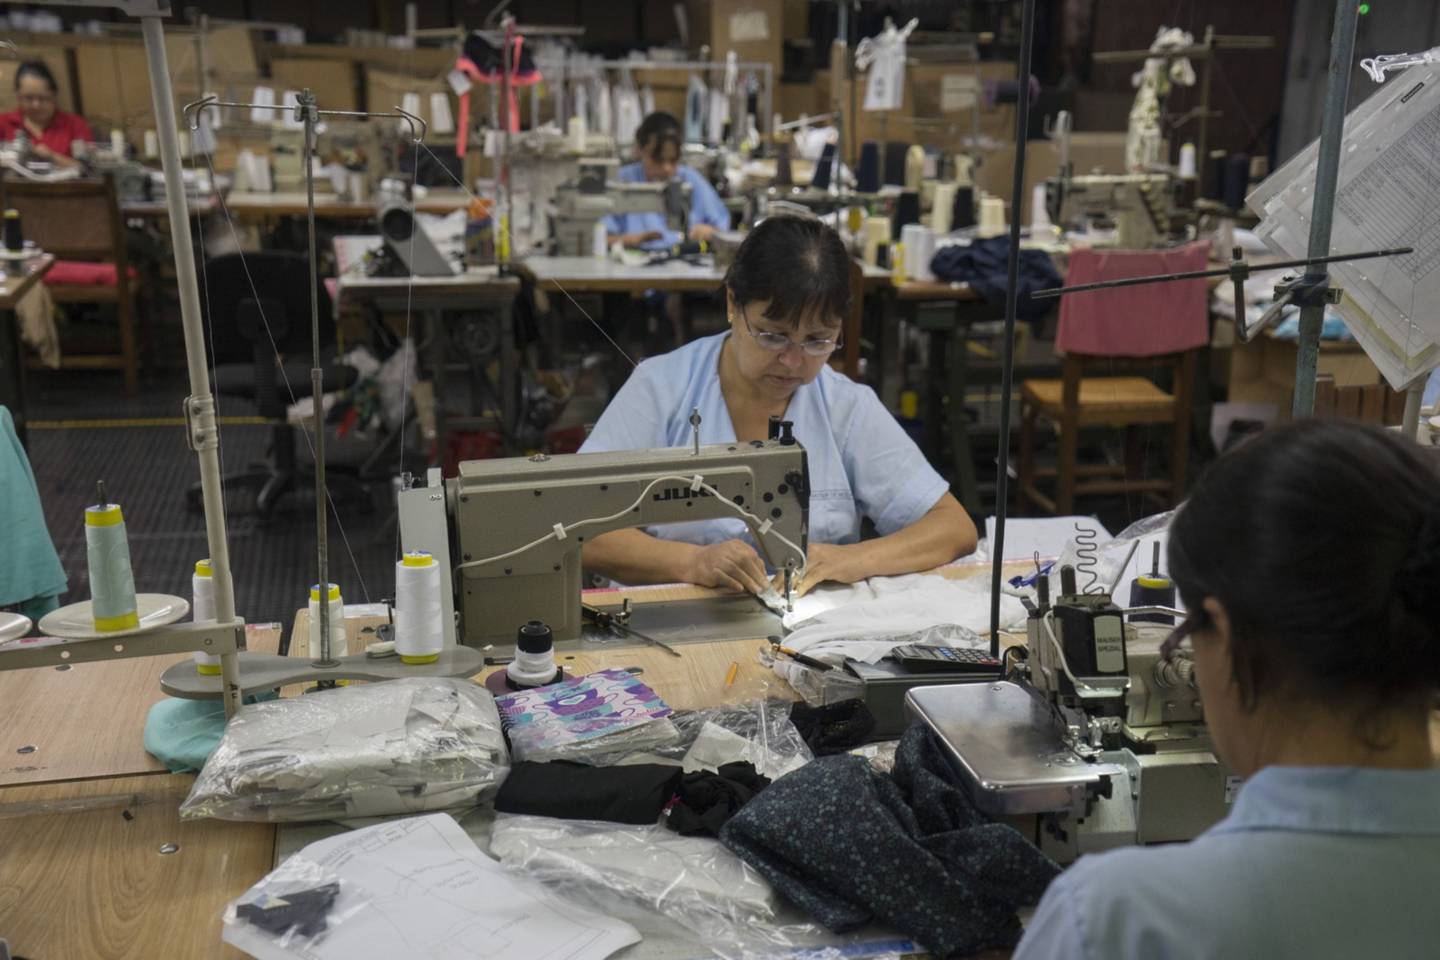 Los trabajadores operan máquinas de coser en la fábrica de Touche en Medellín, Colombia, el lunes 25 de agosto de 2014dfd